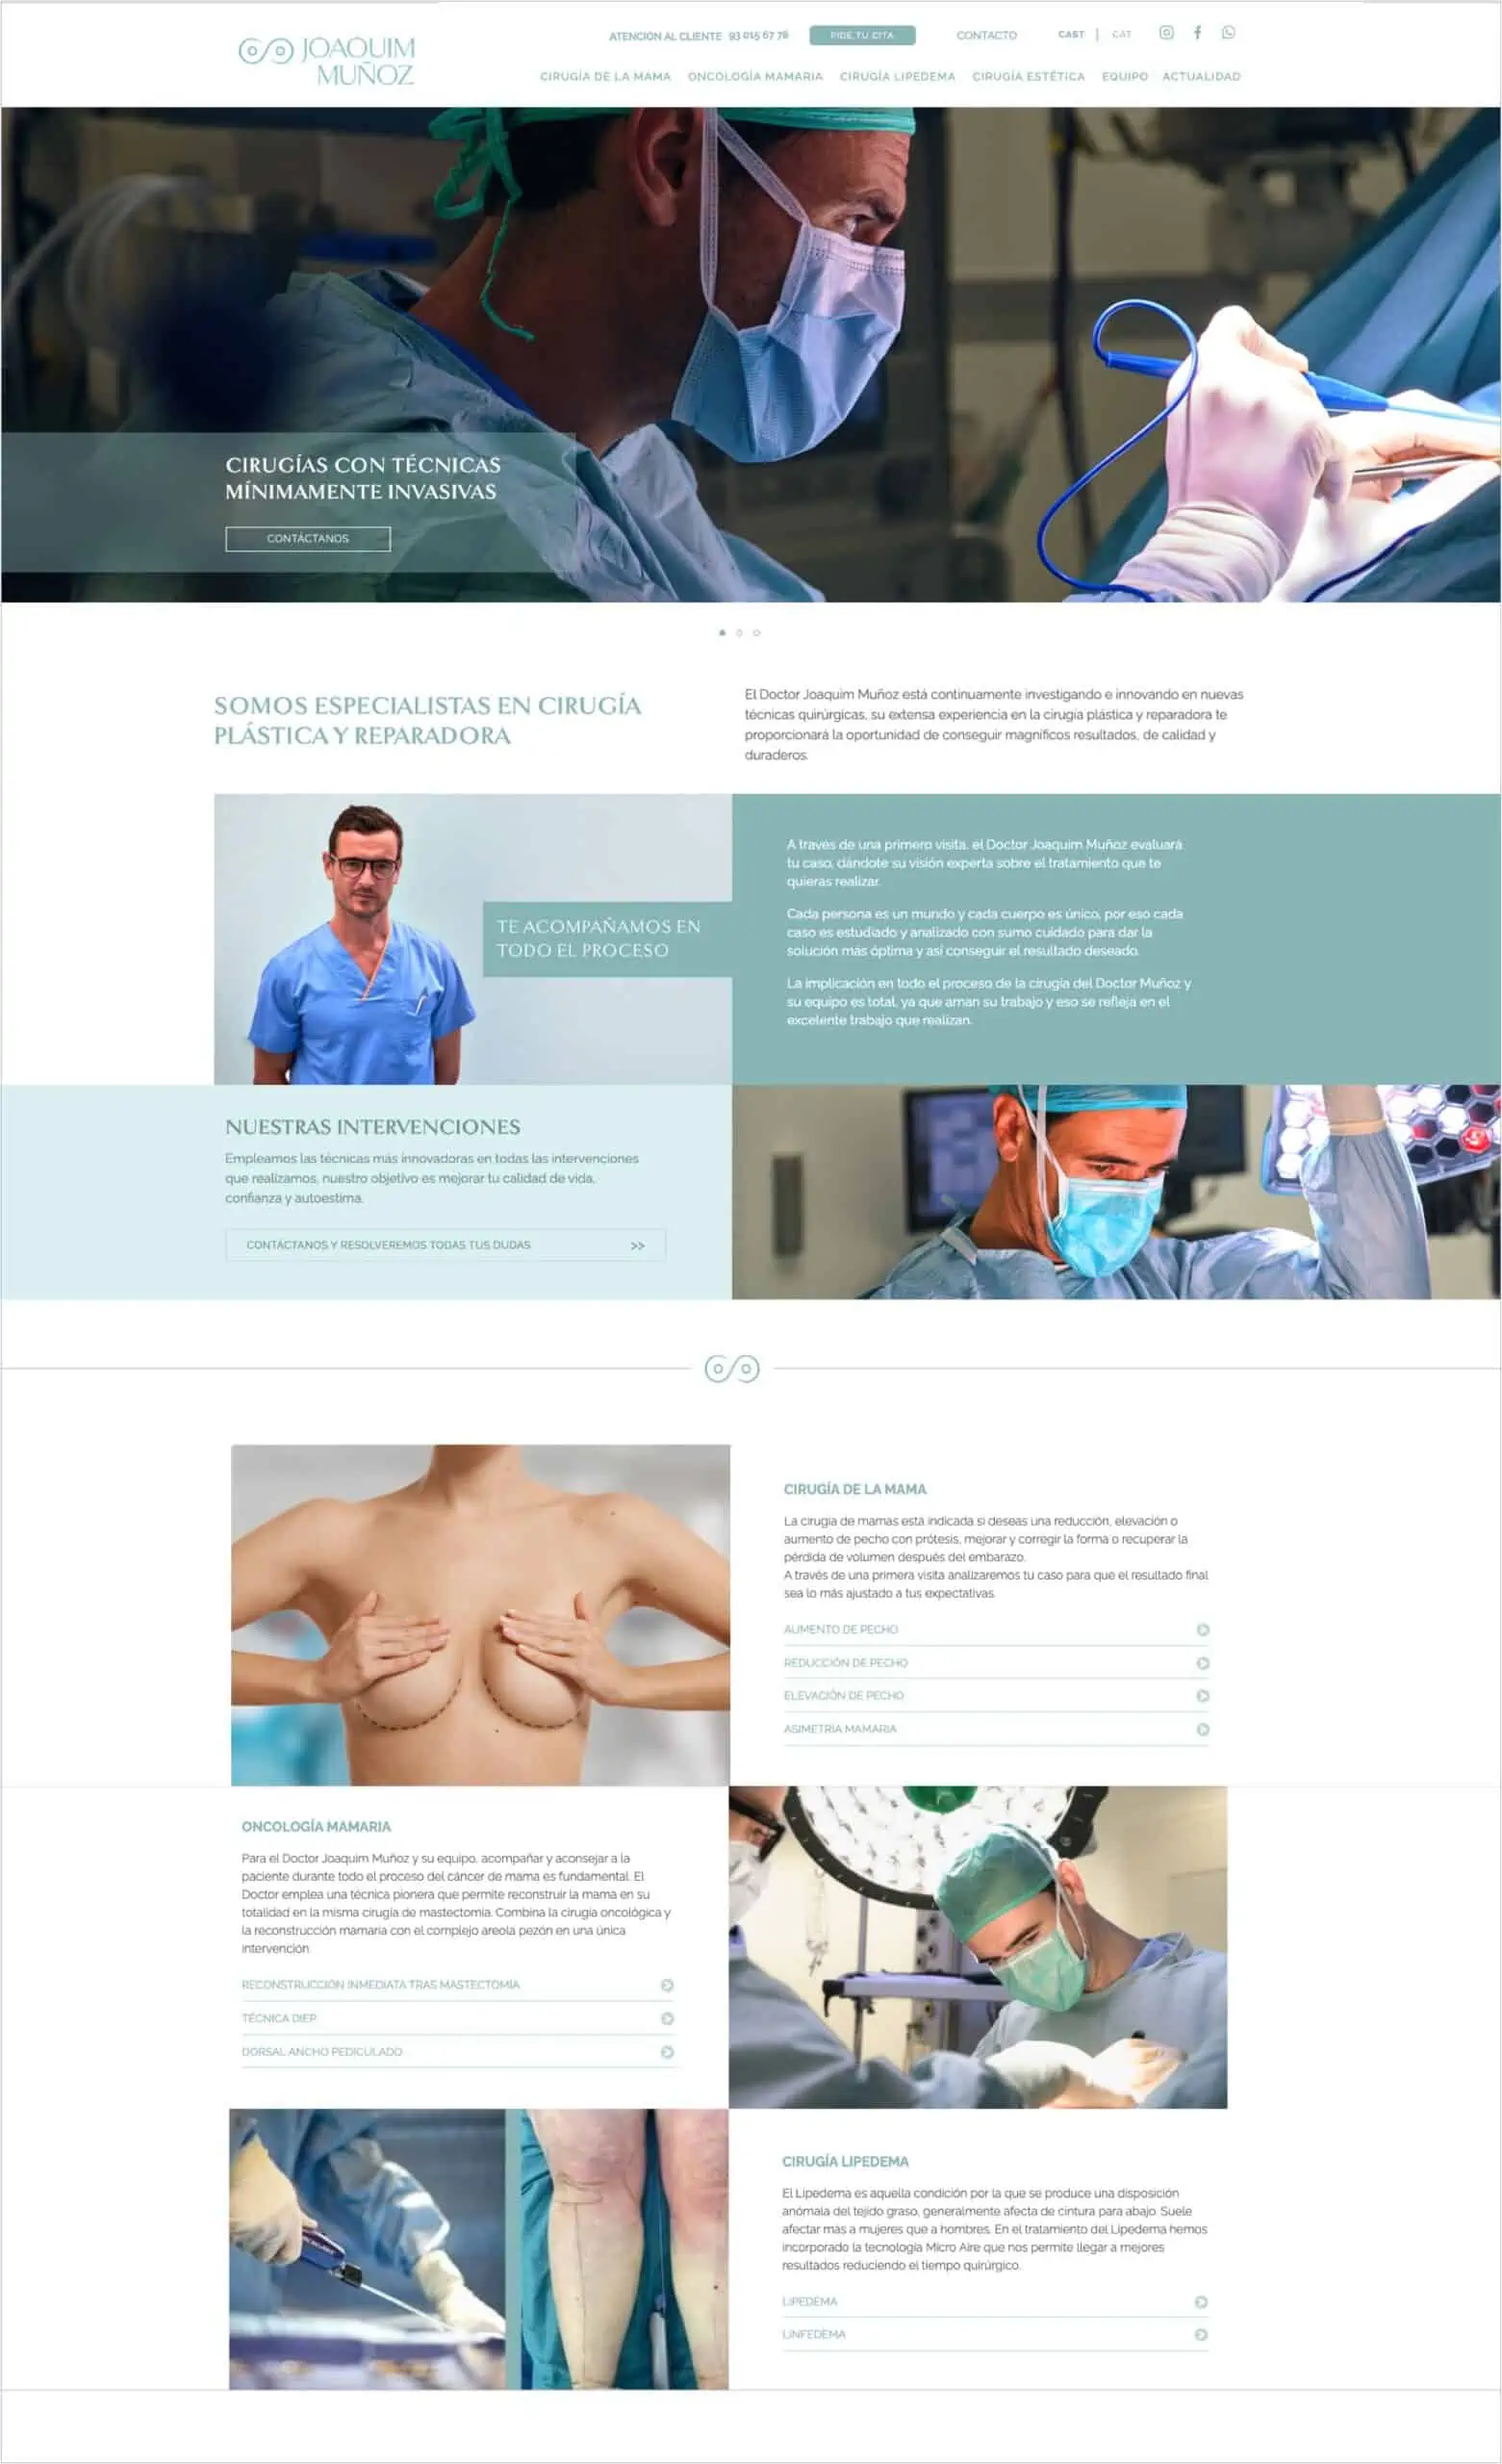 Diseño web para cirujano plástica Doctor Joaquim Muñoz